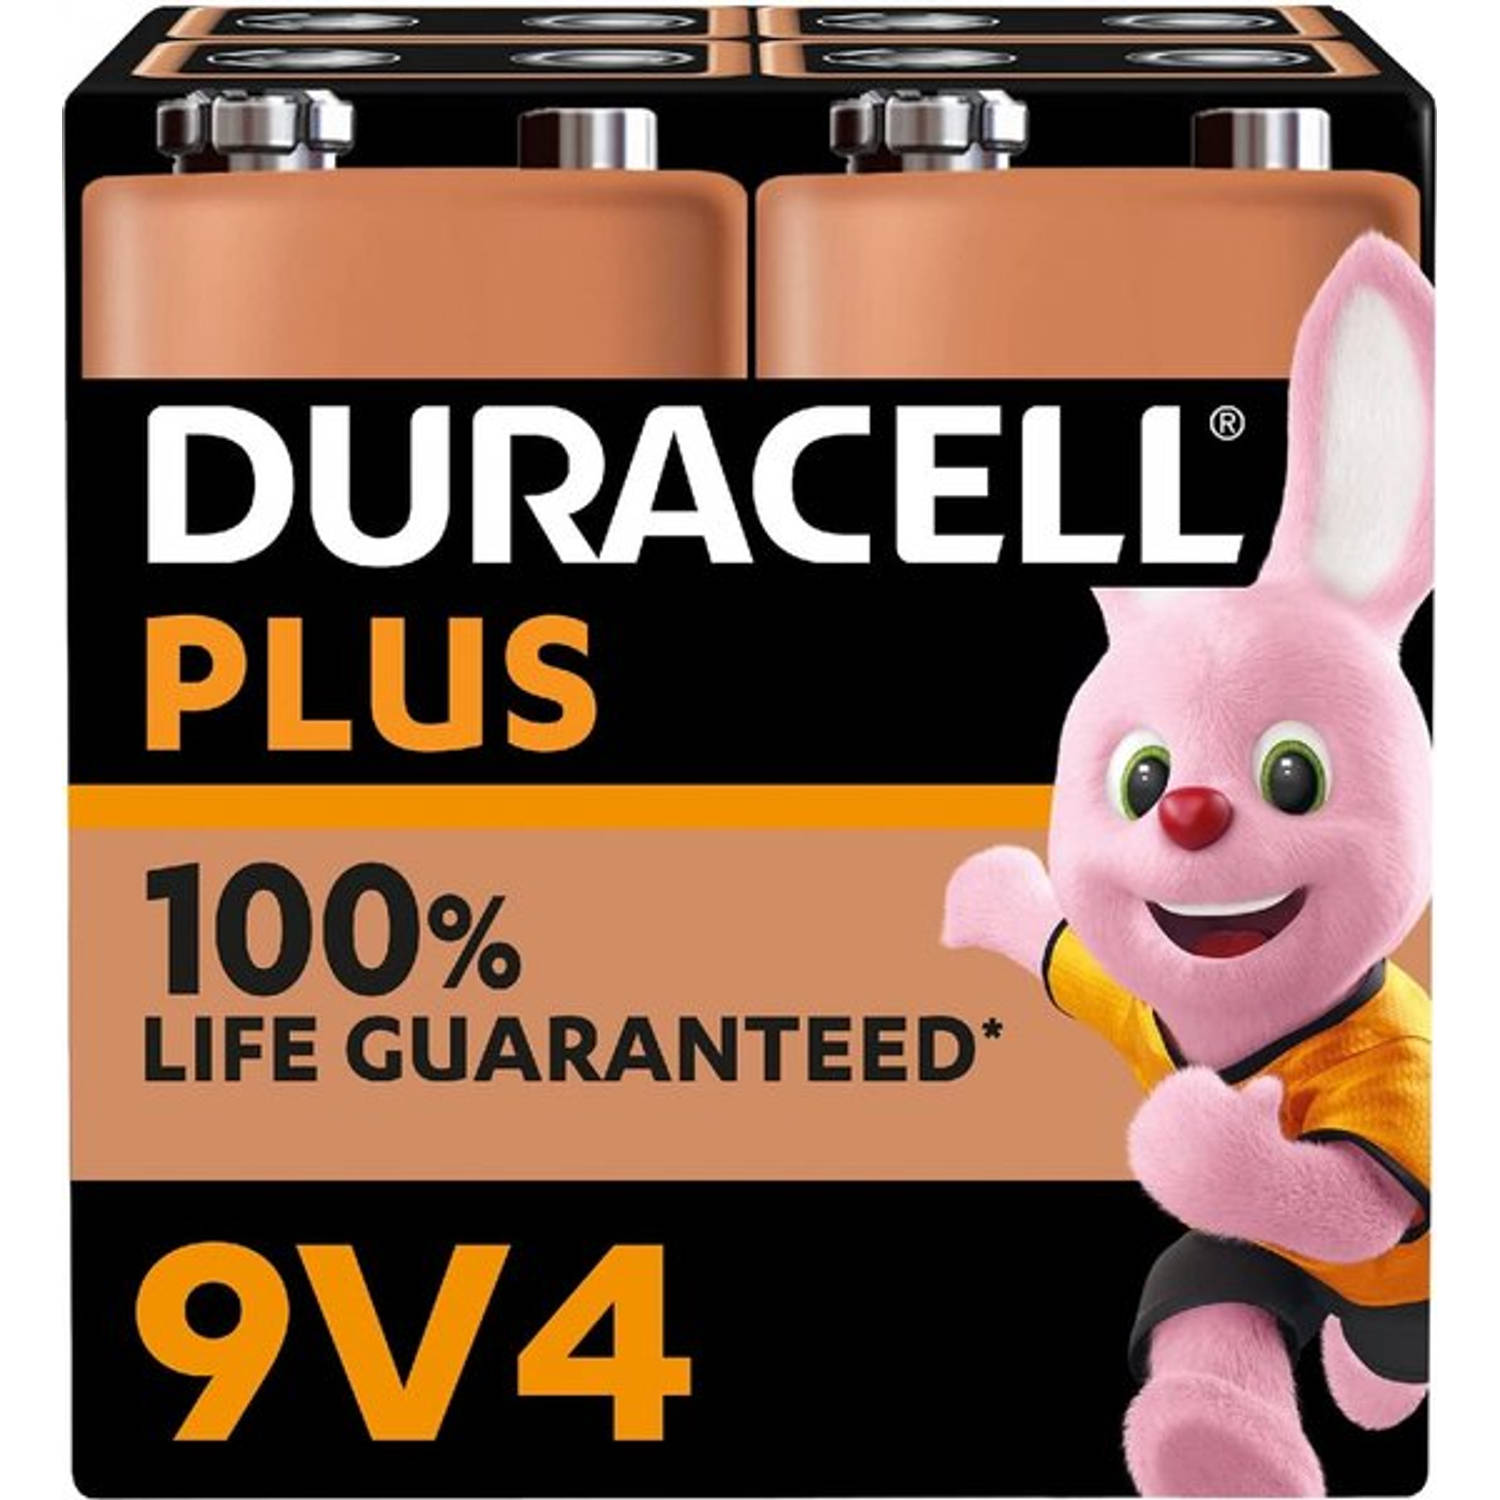 Duracell Plus 100% 9v 4 PAck